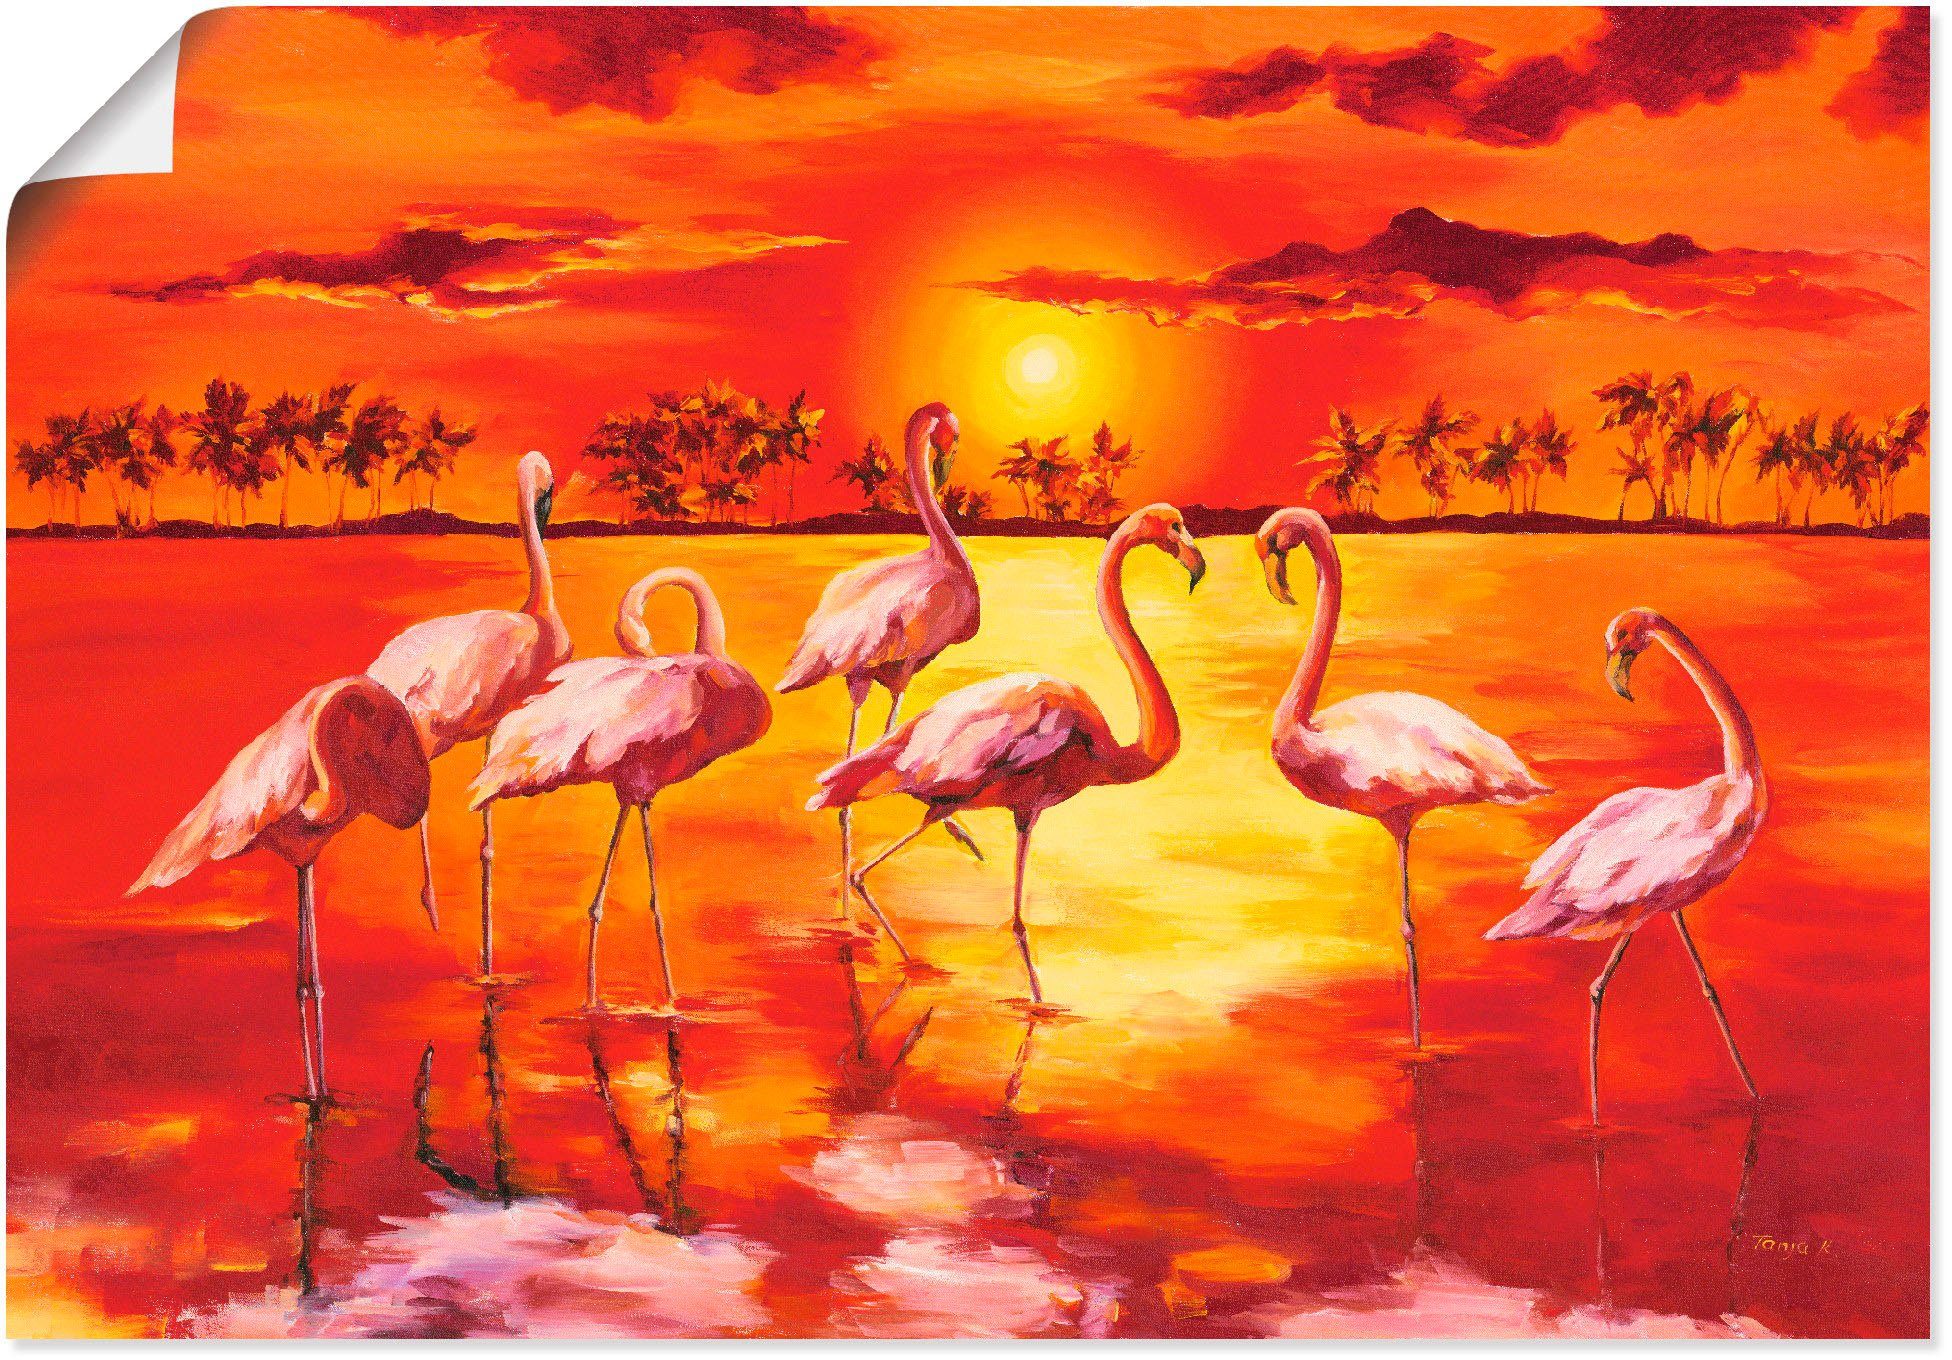 Artland Artprint Flamingo's in vele afmetingen & productsoorten - artprint van aluminium / artprint voor buiten, artprint op linnen, poster, muursticker / wandfolie ook geschikt vo